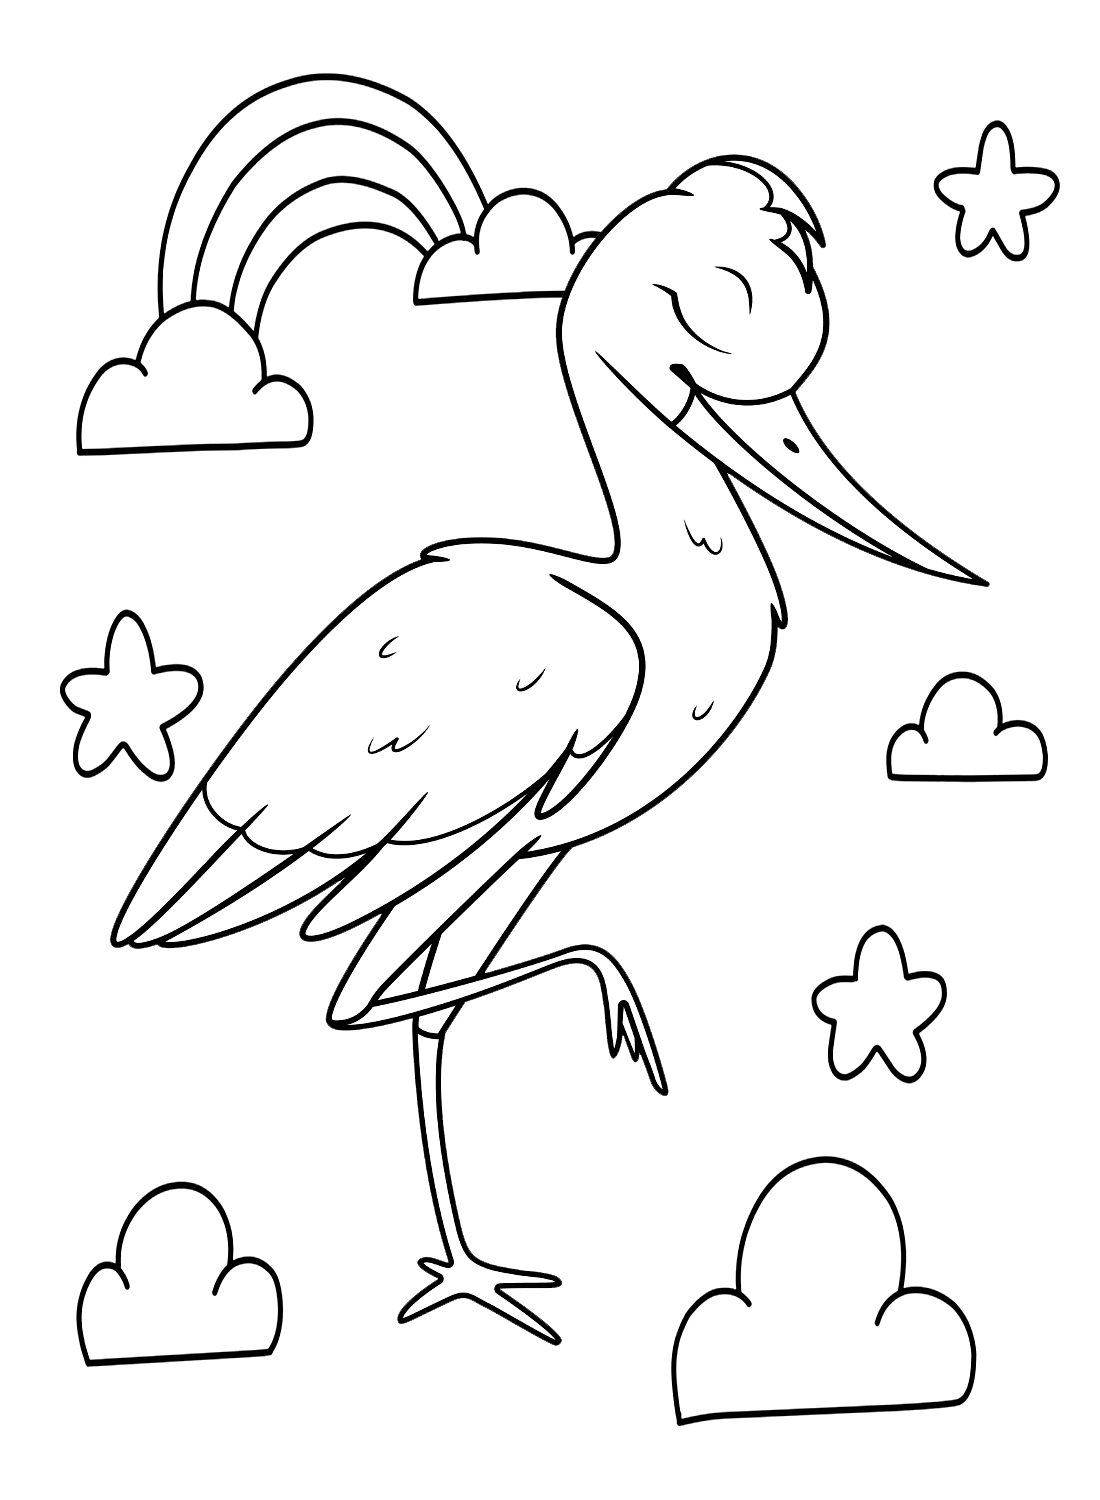 Storchenaugen geschlossen von Stork